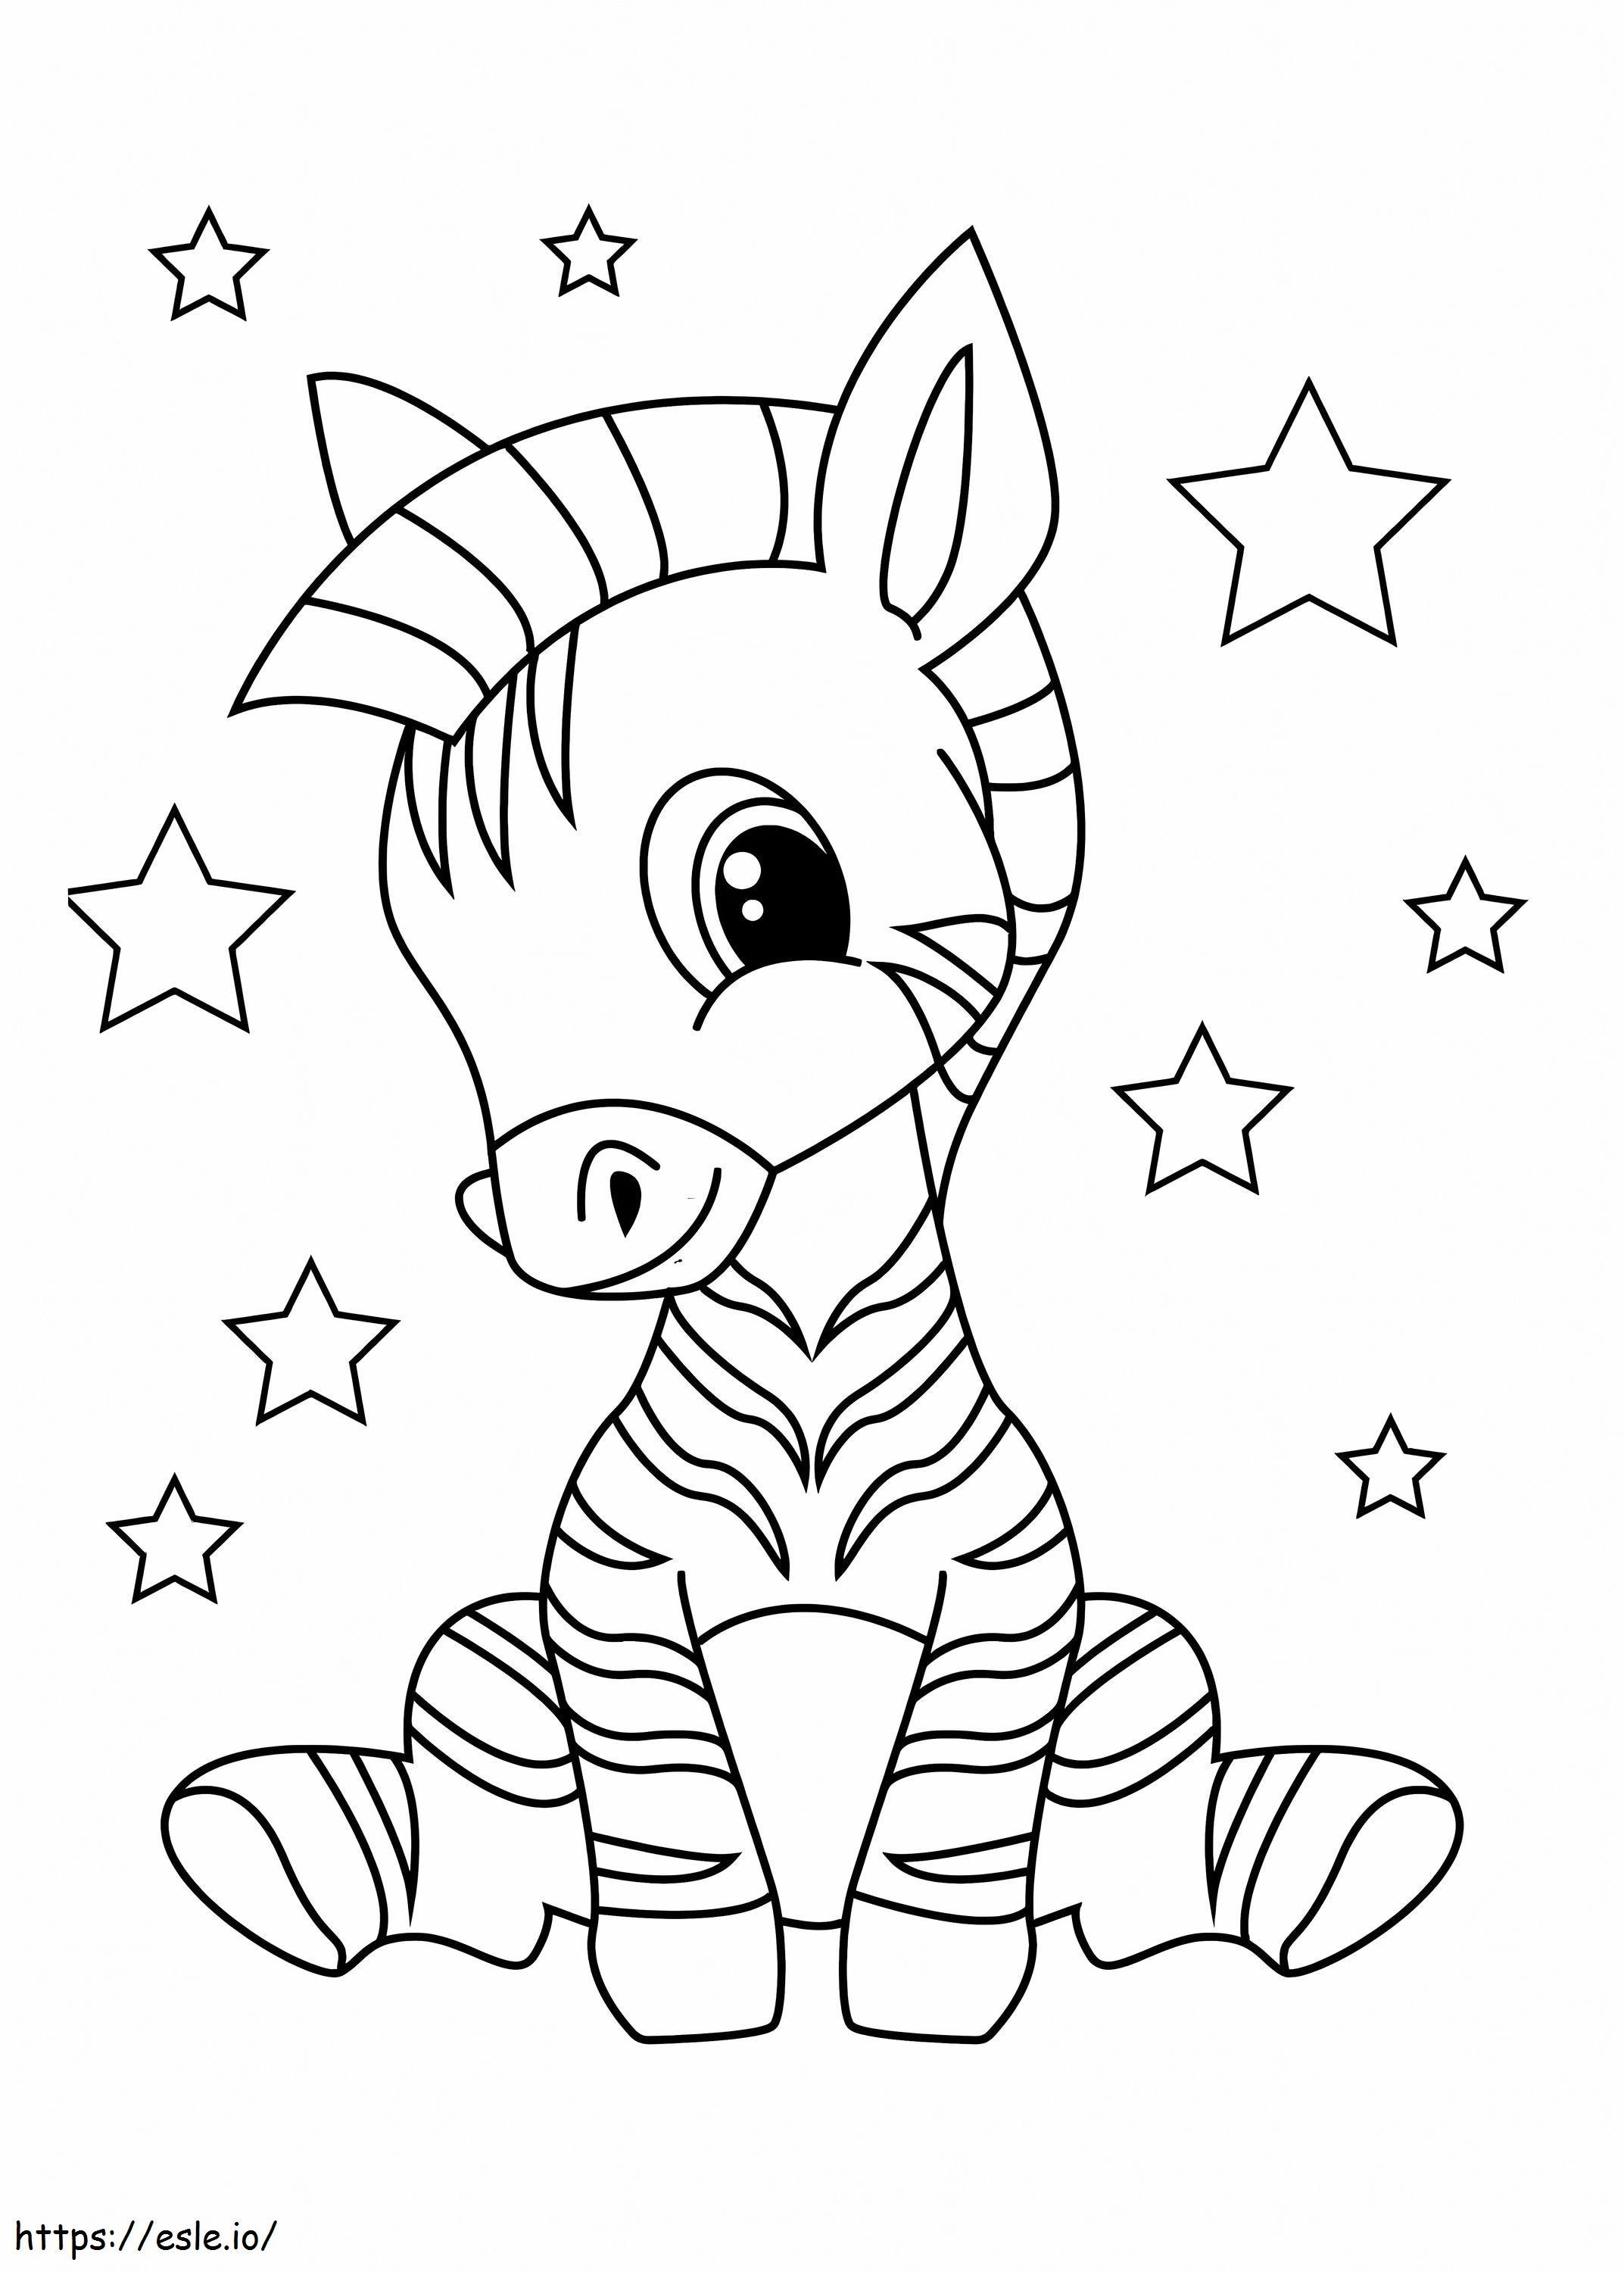 Zebra sentada com estrela para colorir